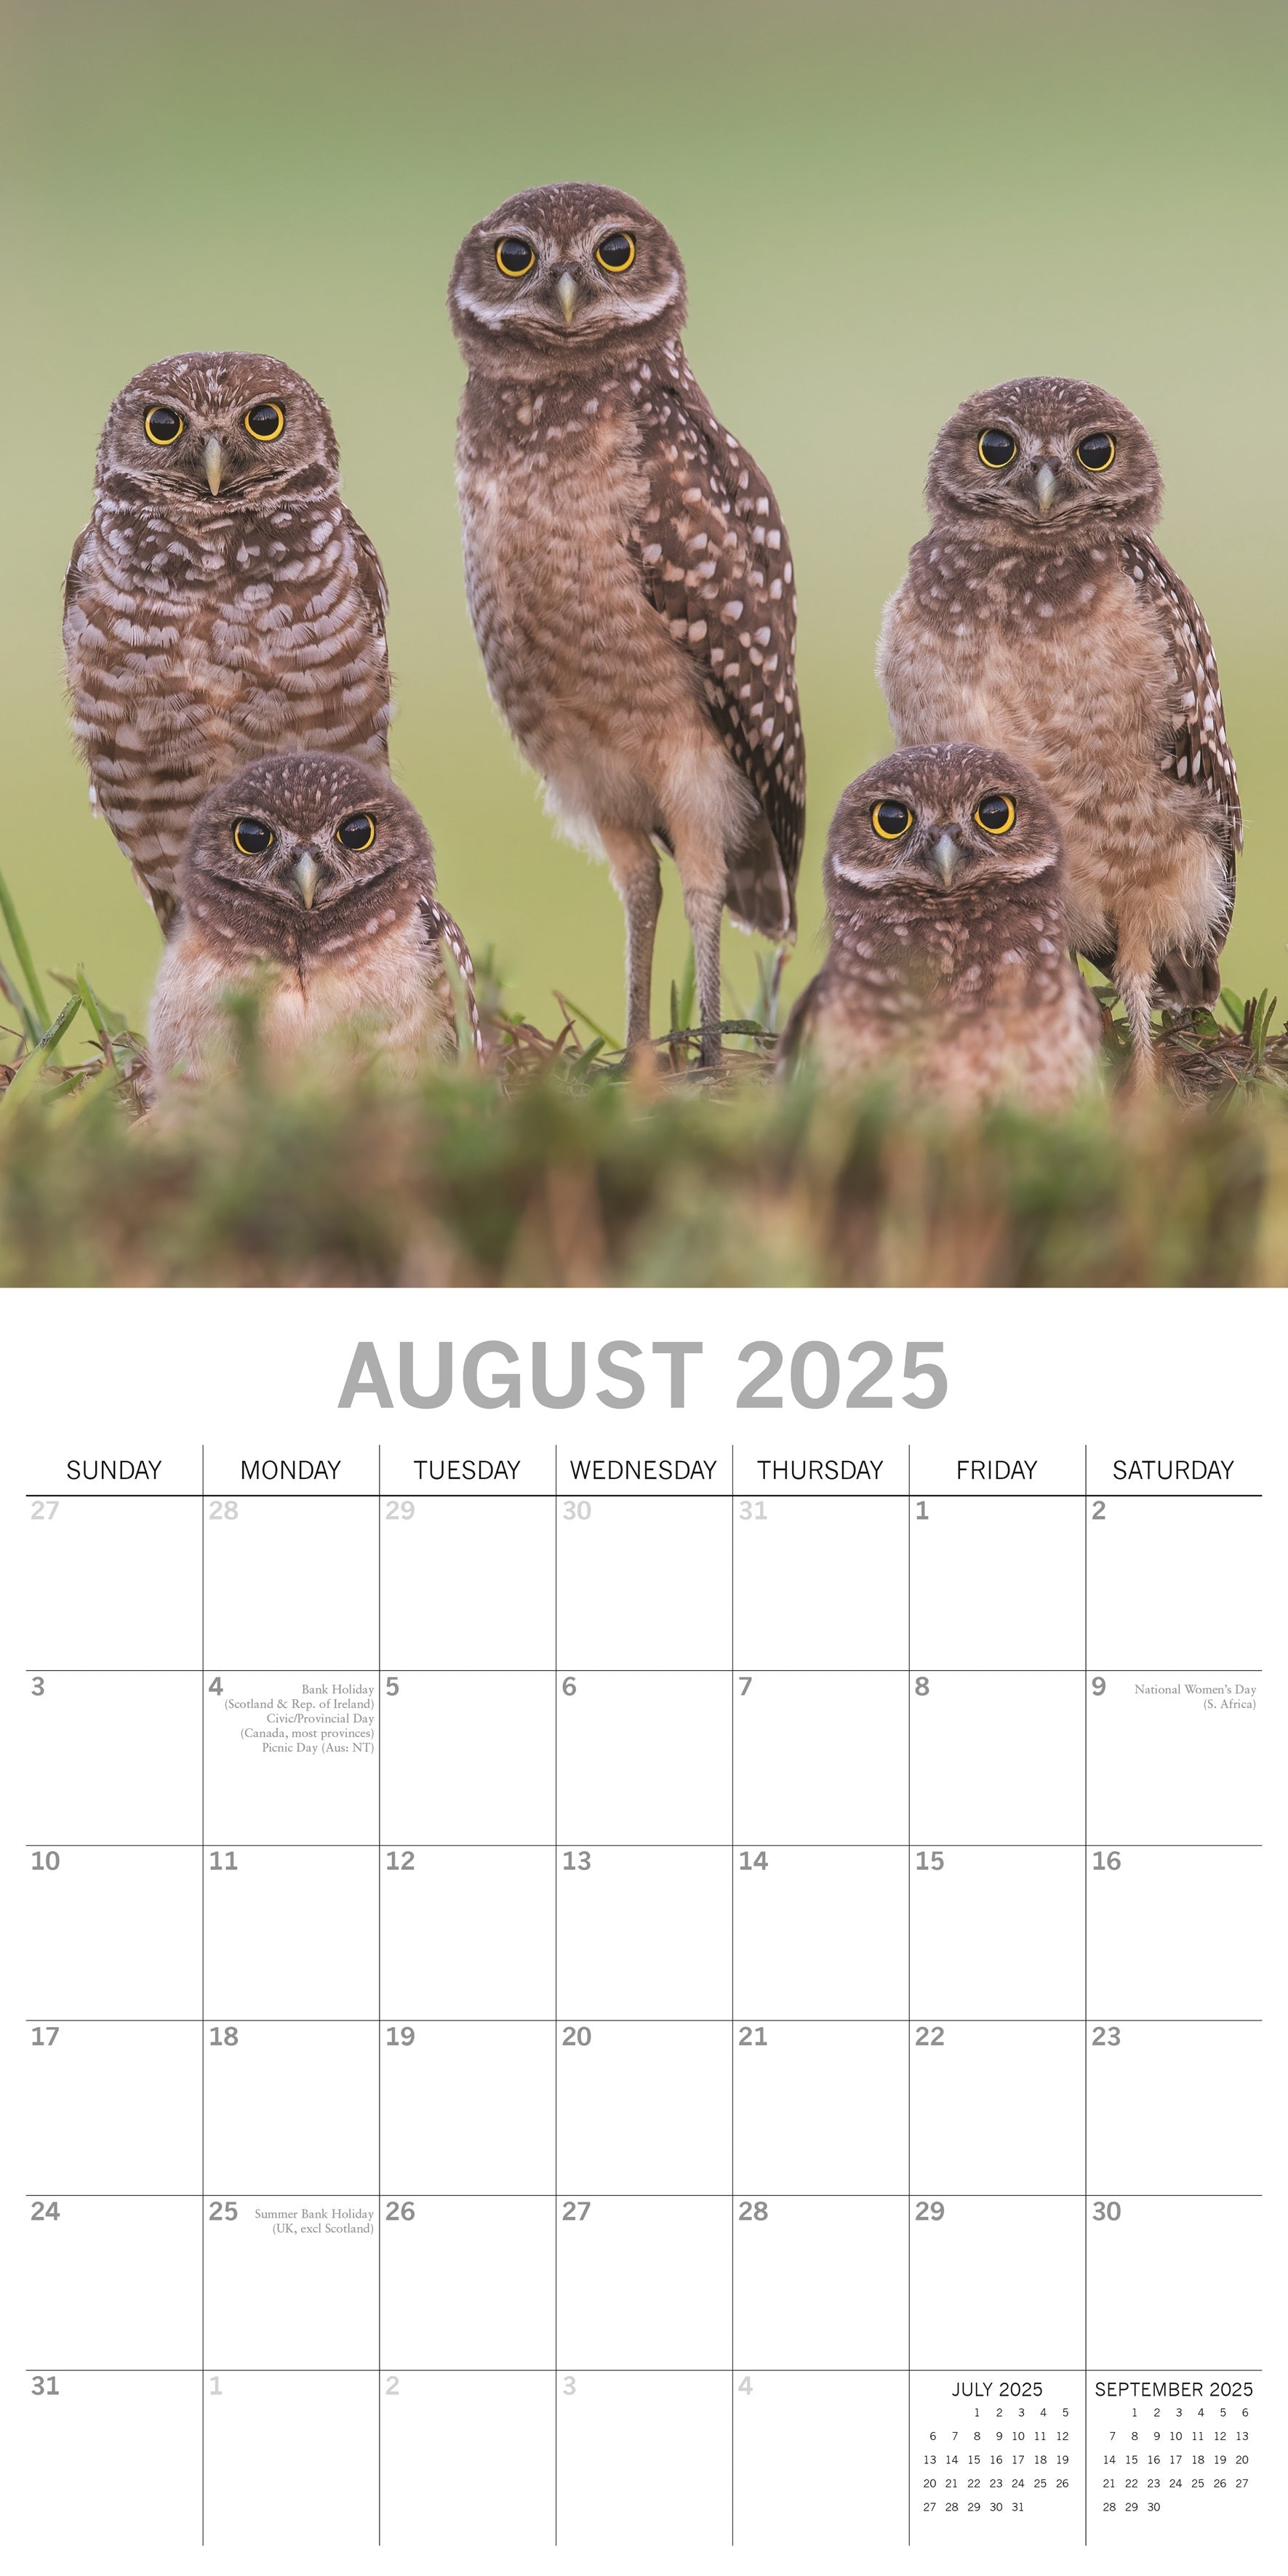 2025 Owls - Square Wall Calendar